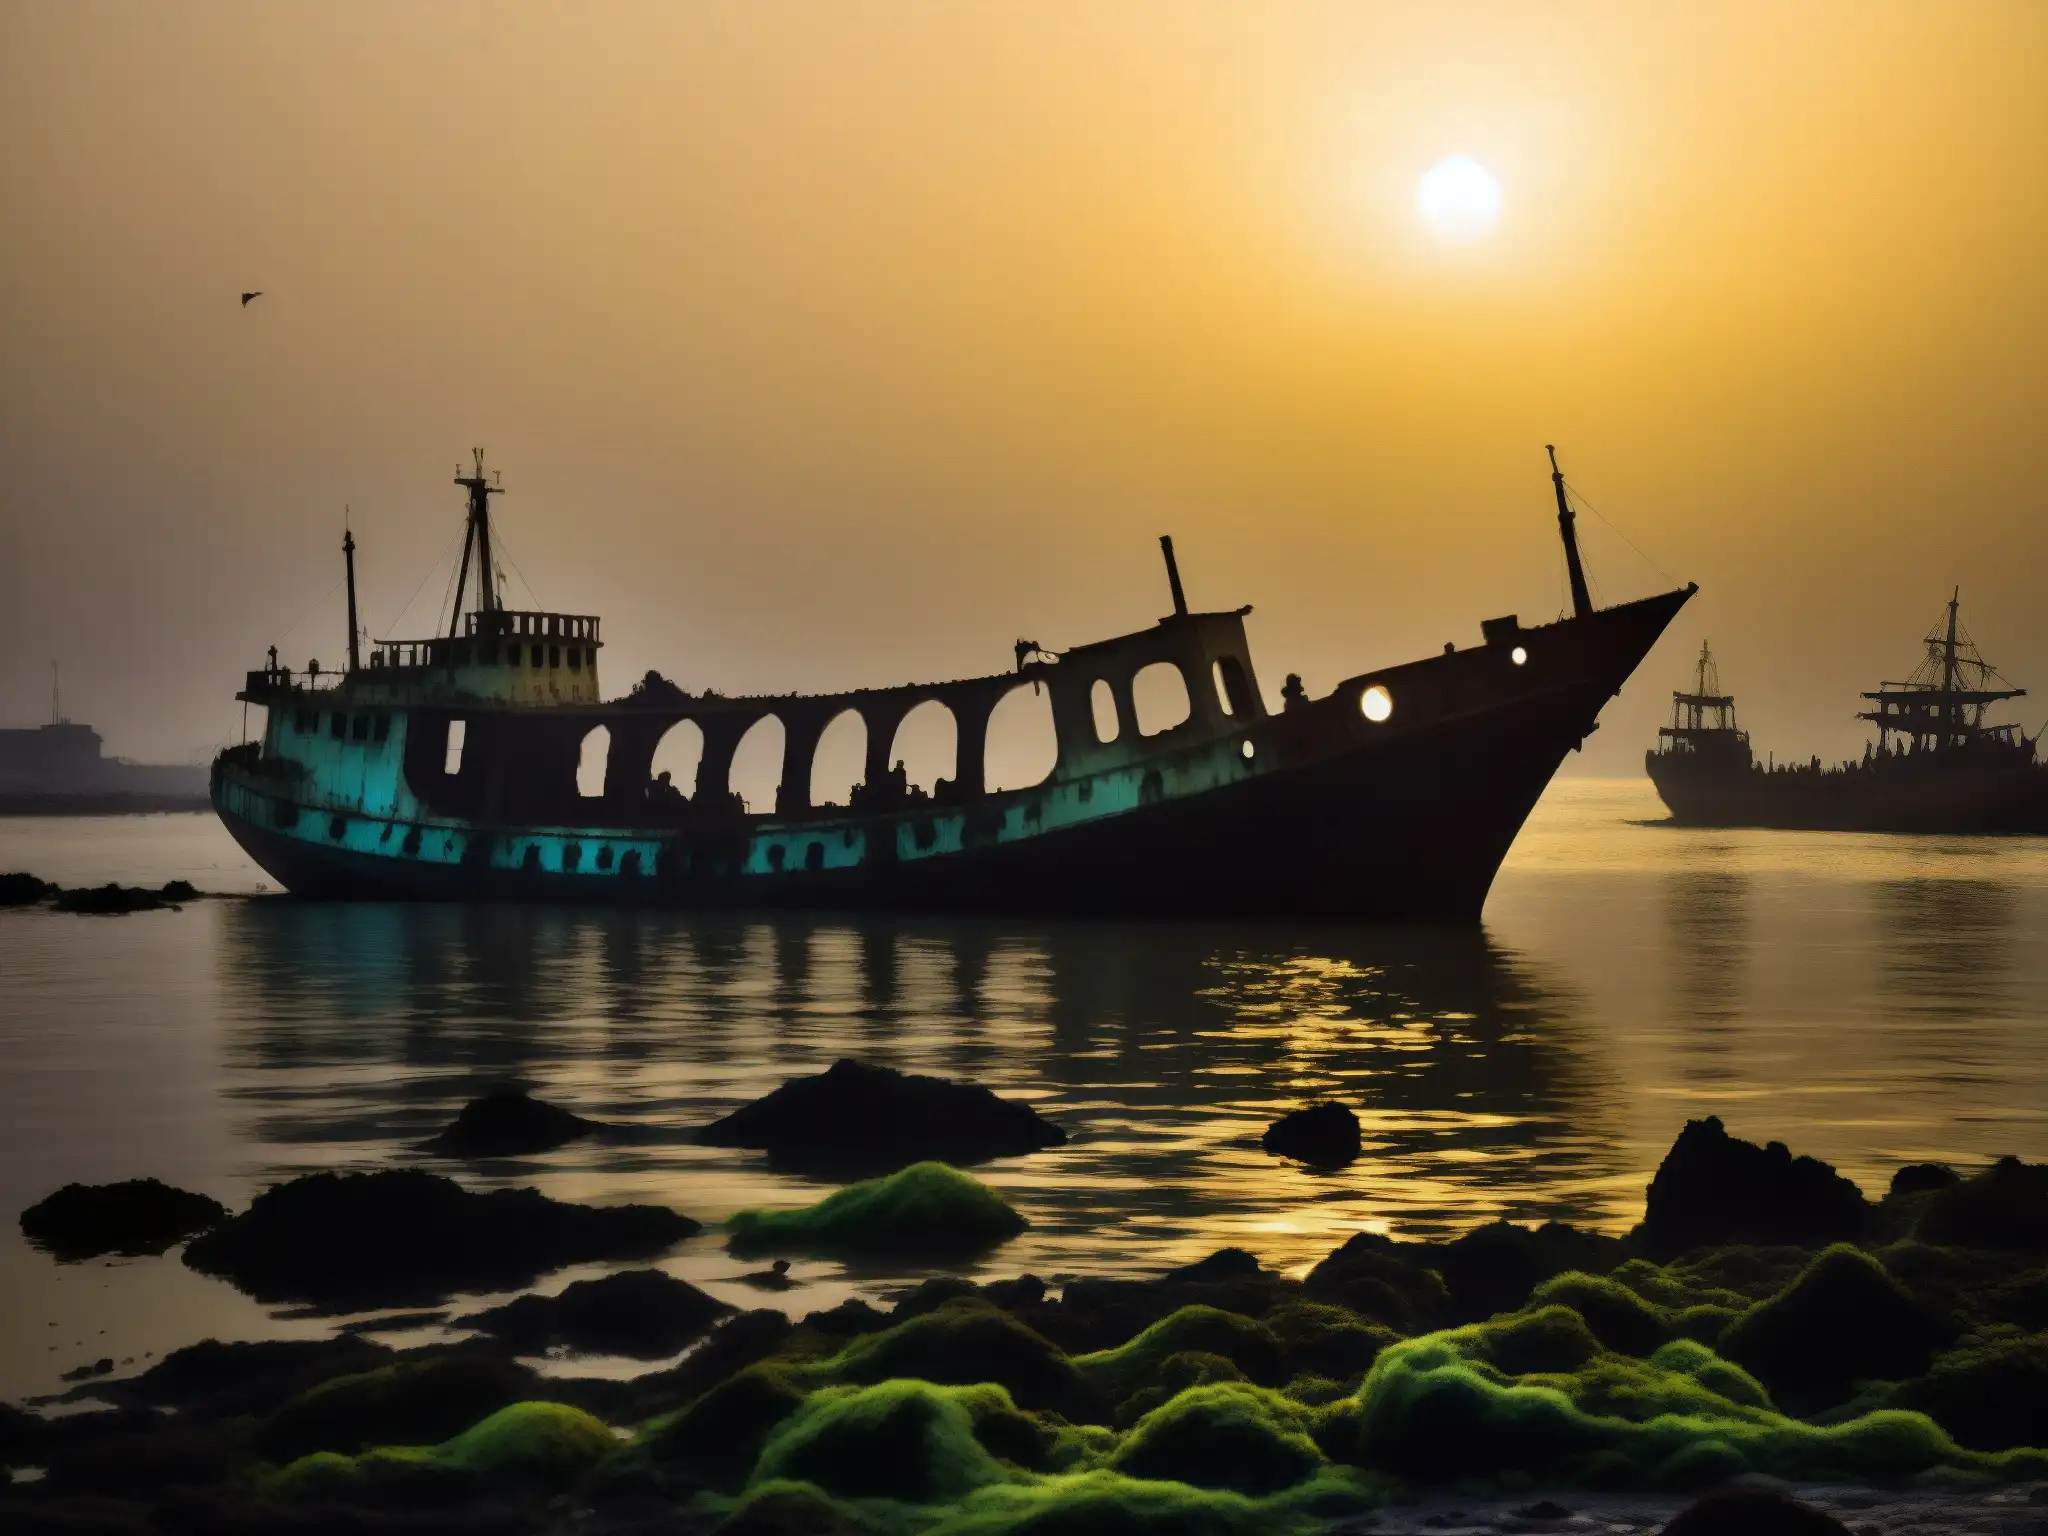 Un barco fantasma en el puerto de Mumbai, envuelto en misterio y fatalidad